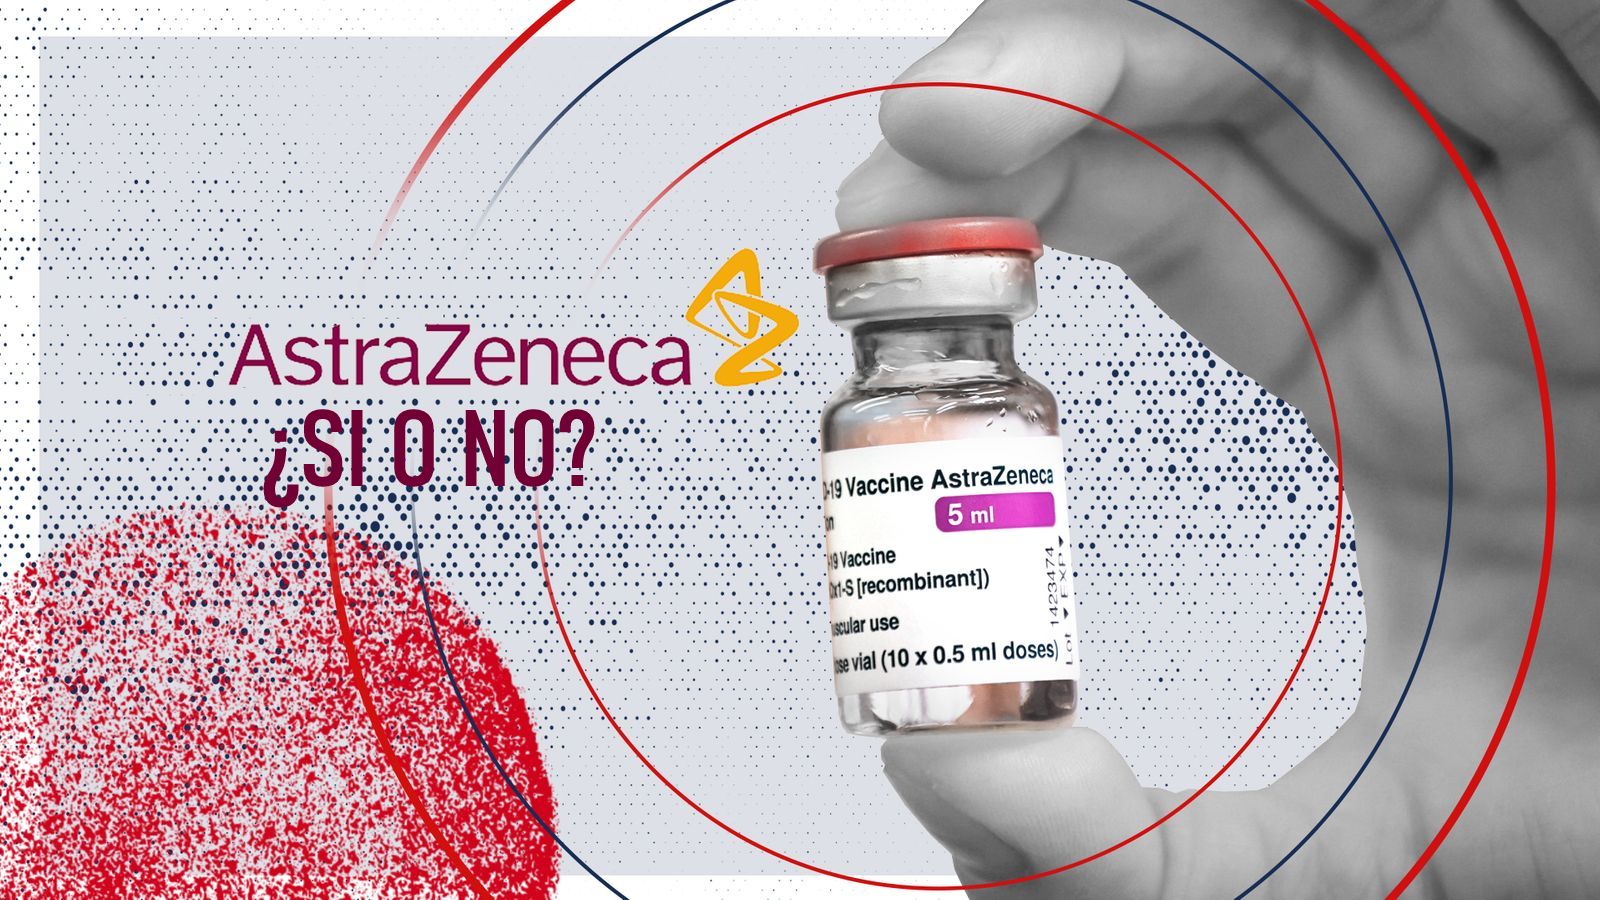 Canadá insiste en seguir utilizando vacuna AstraZeneca, ¿Es segura? Crecen las dudas  